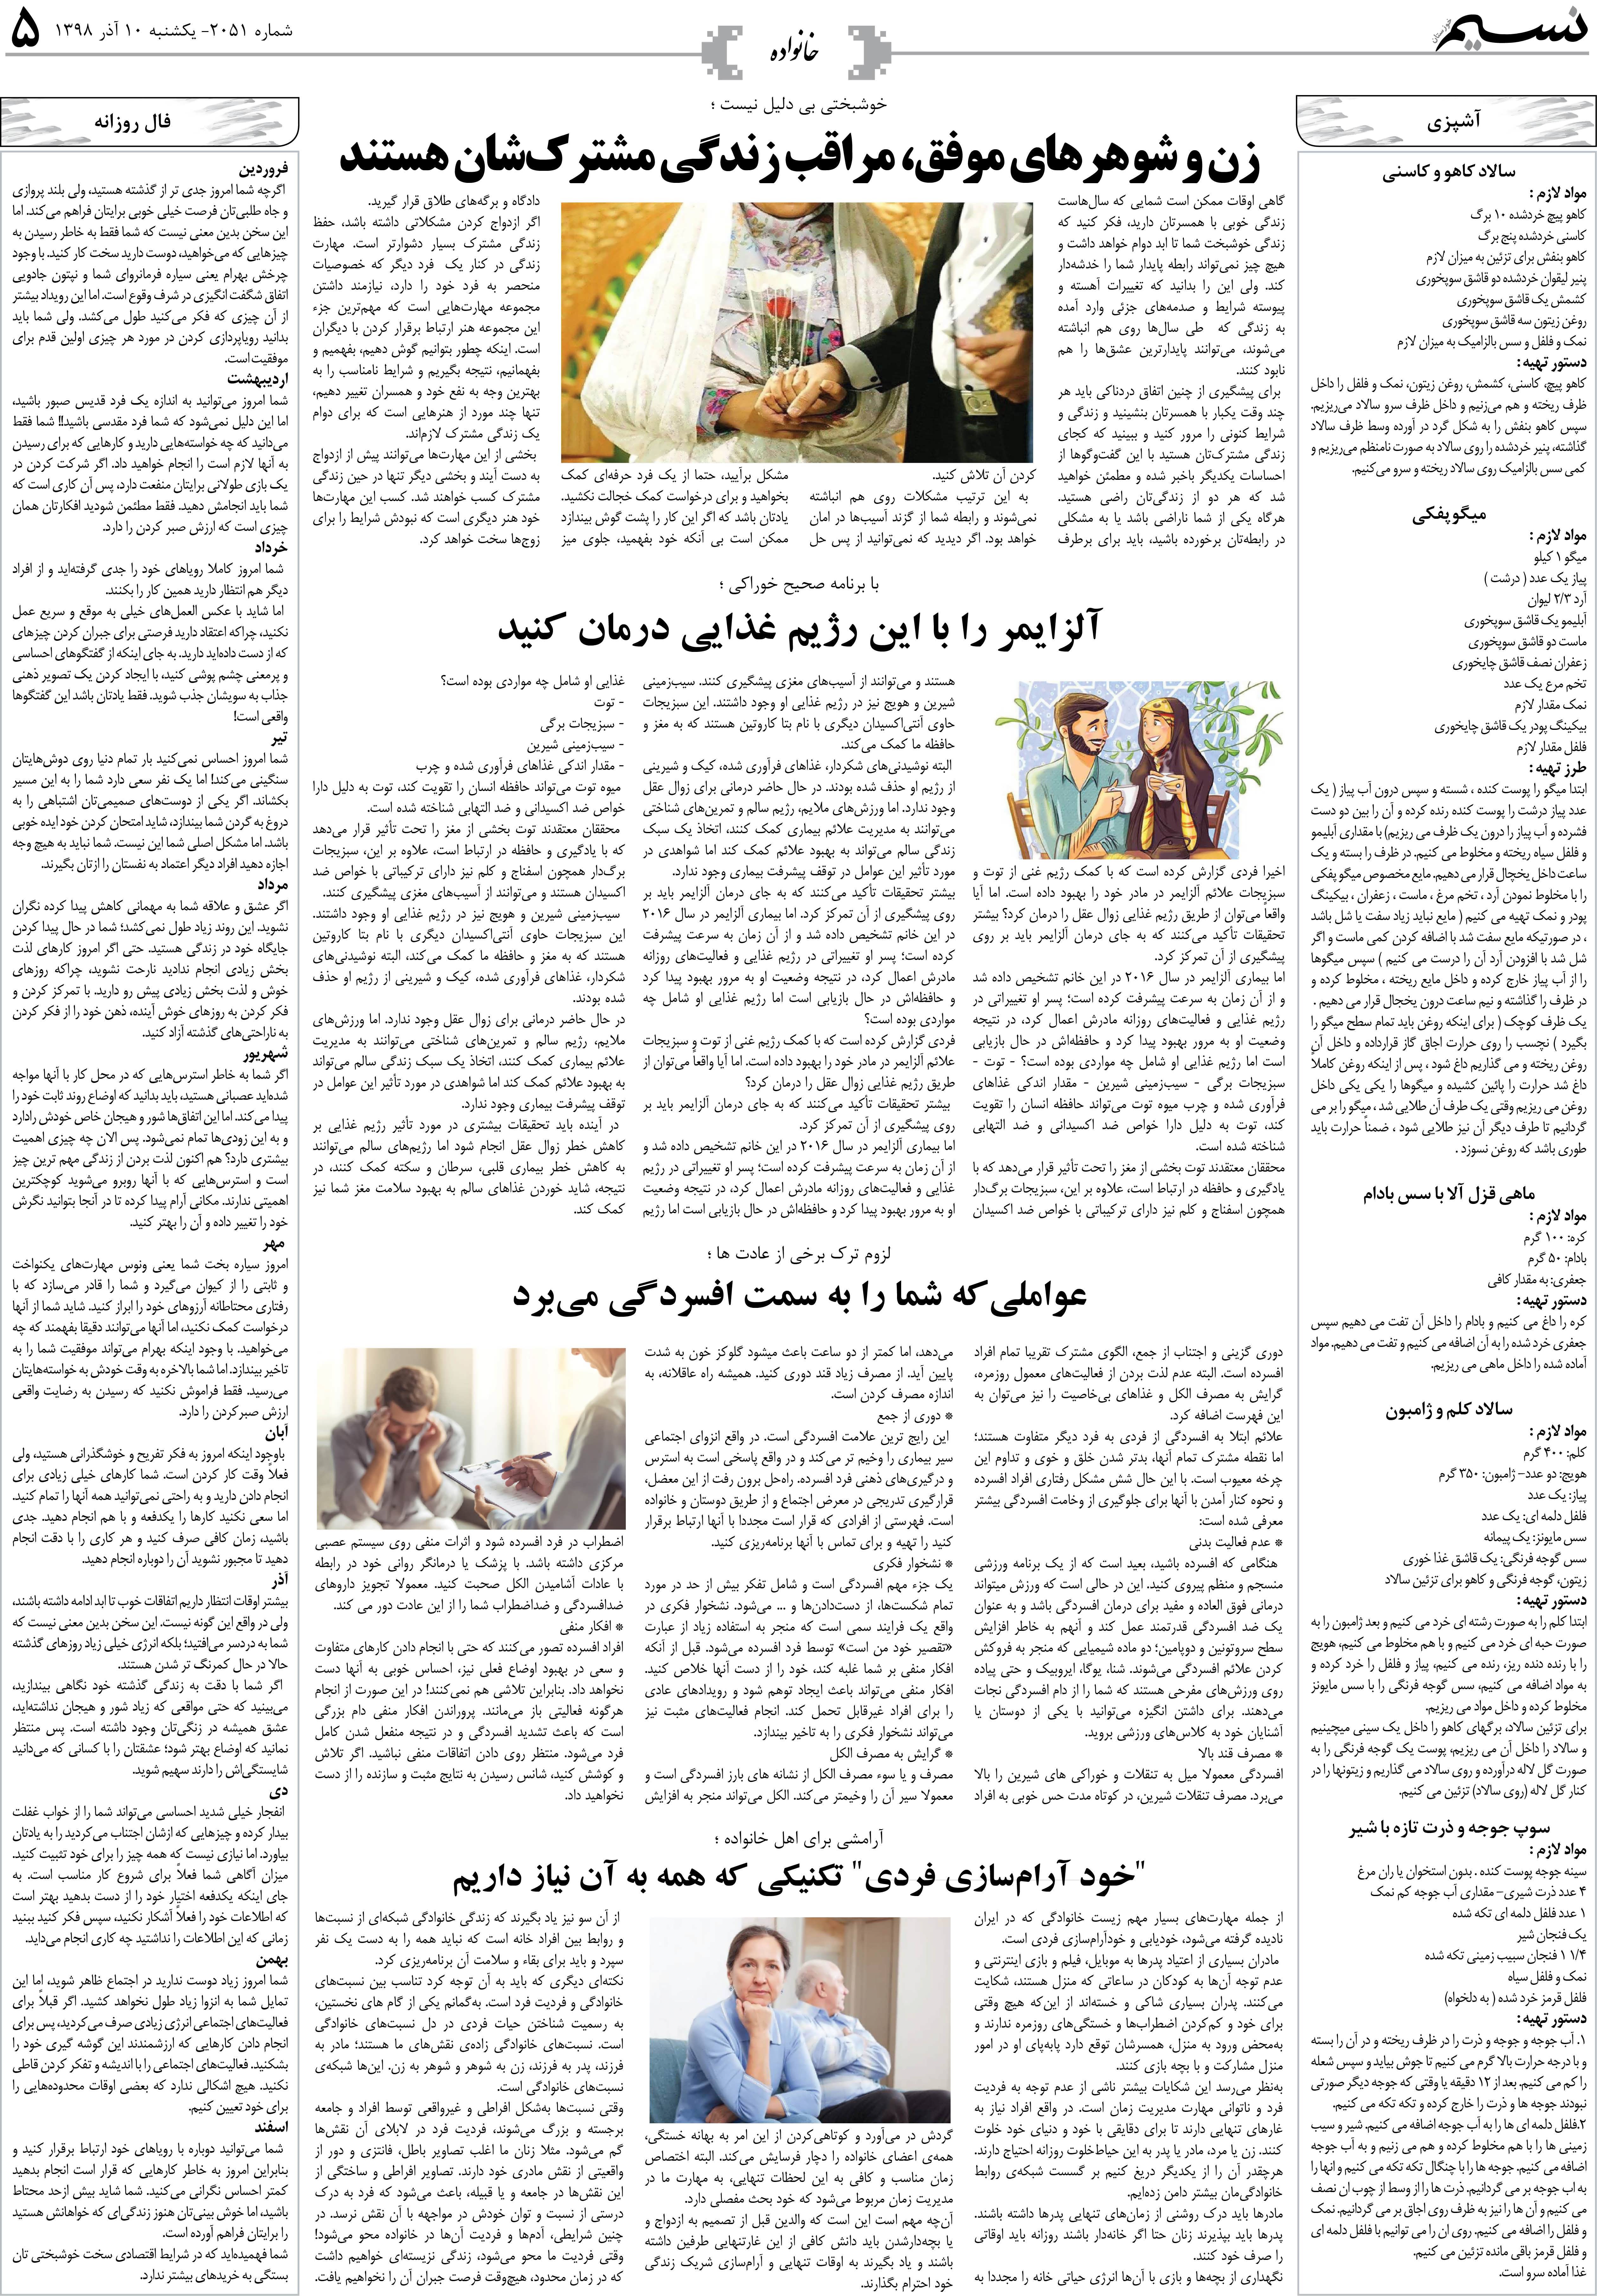 صفحه خانواده روزنامه نسیم شماره 2051